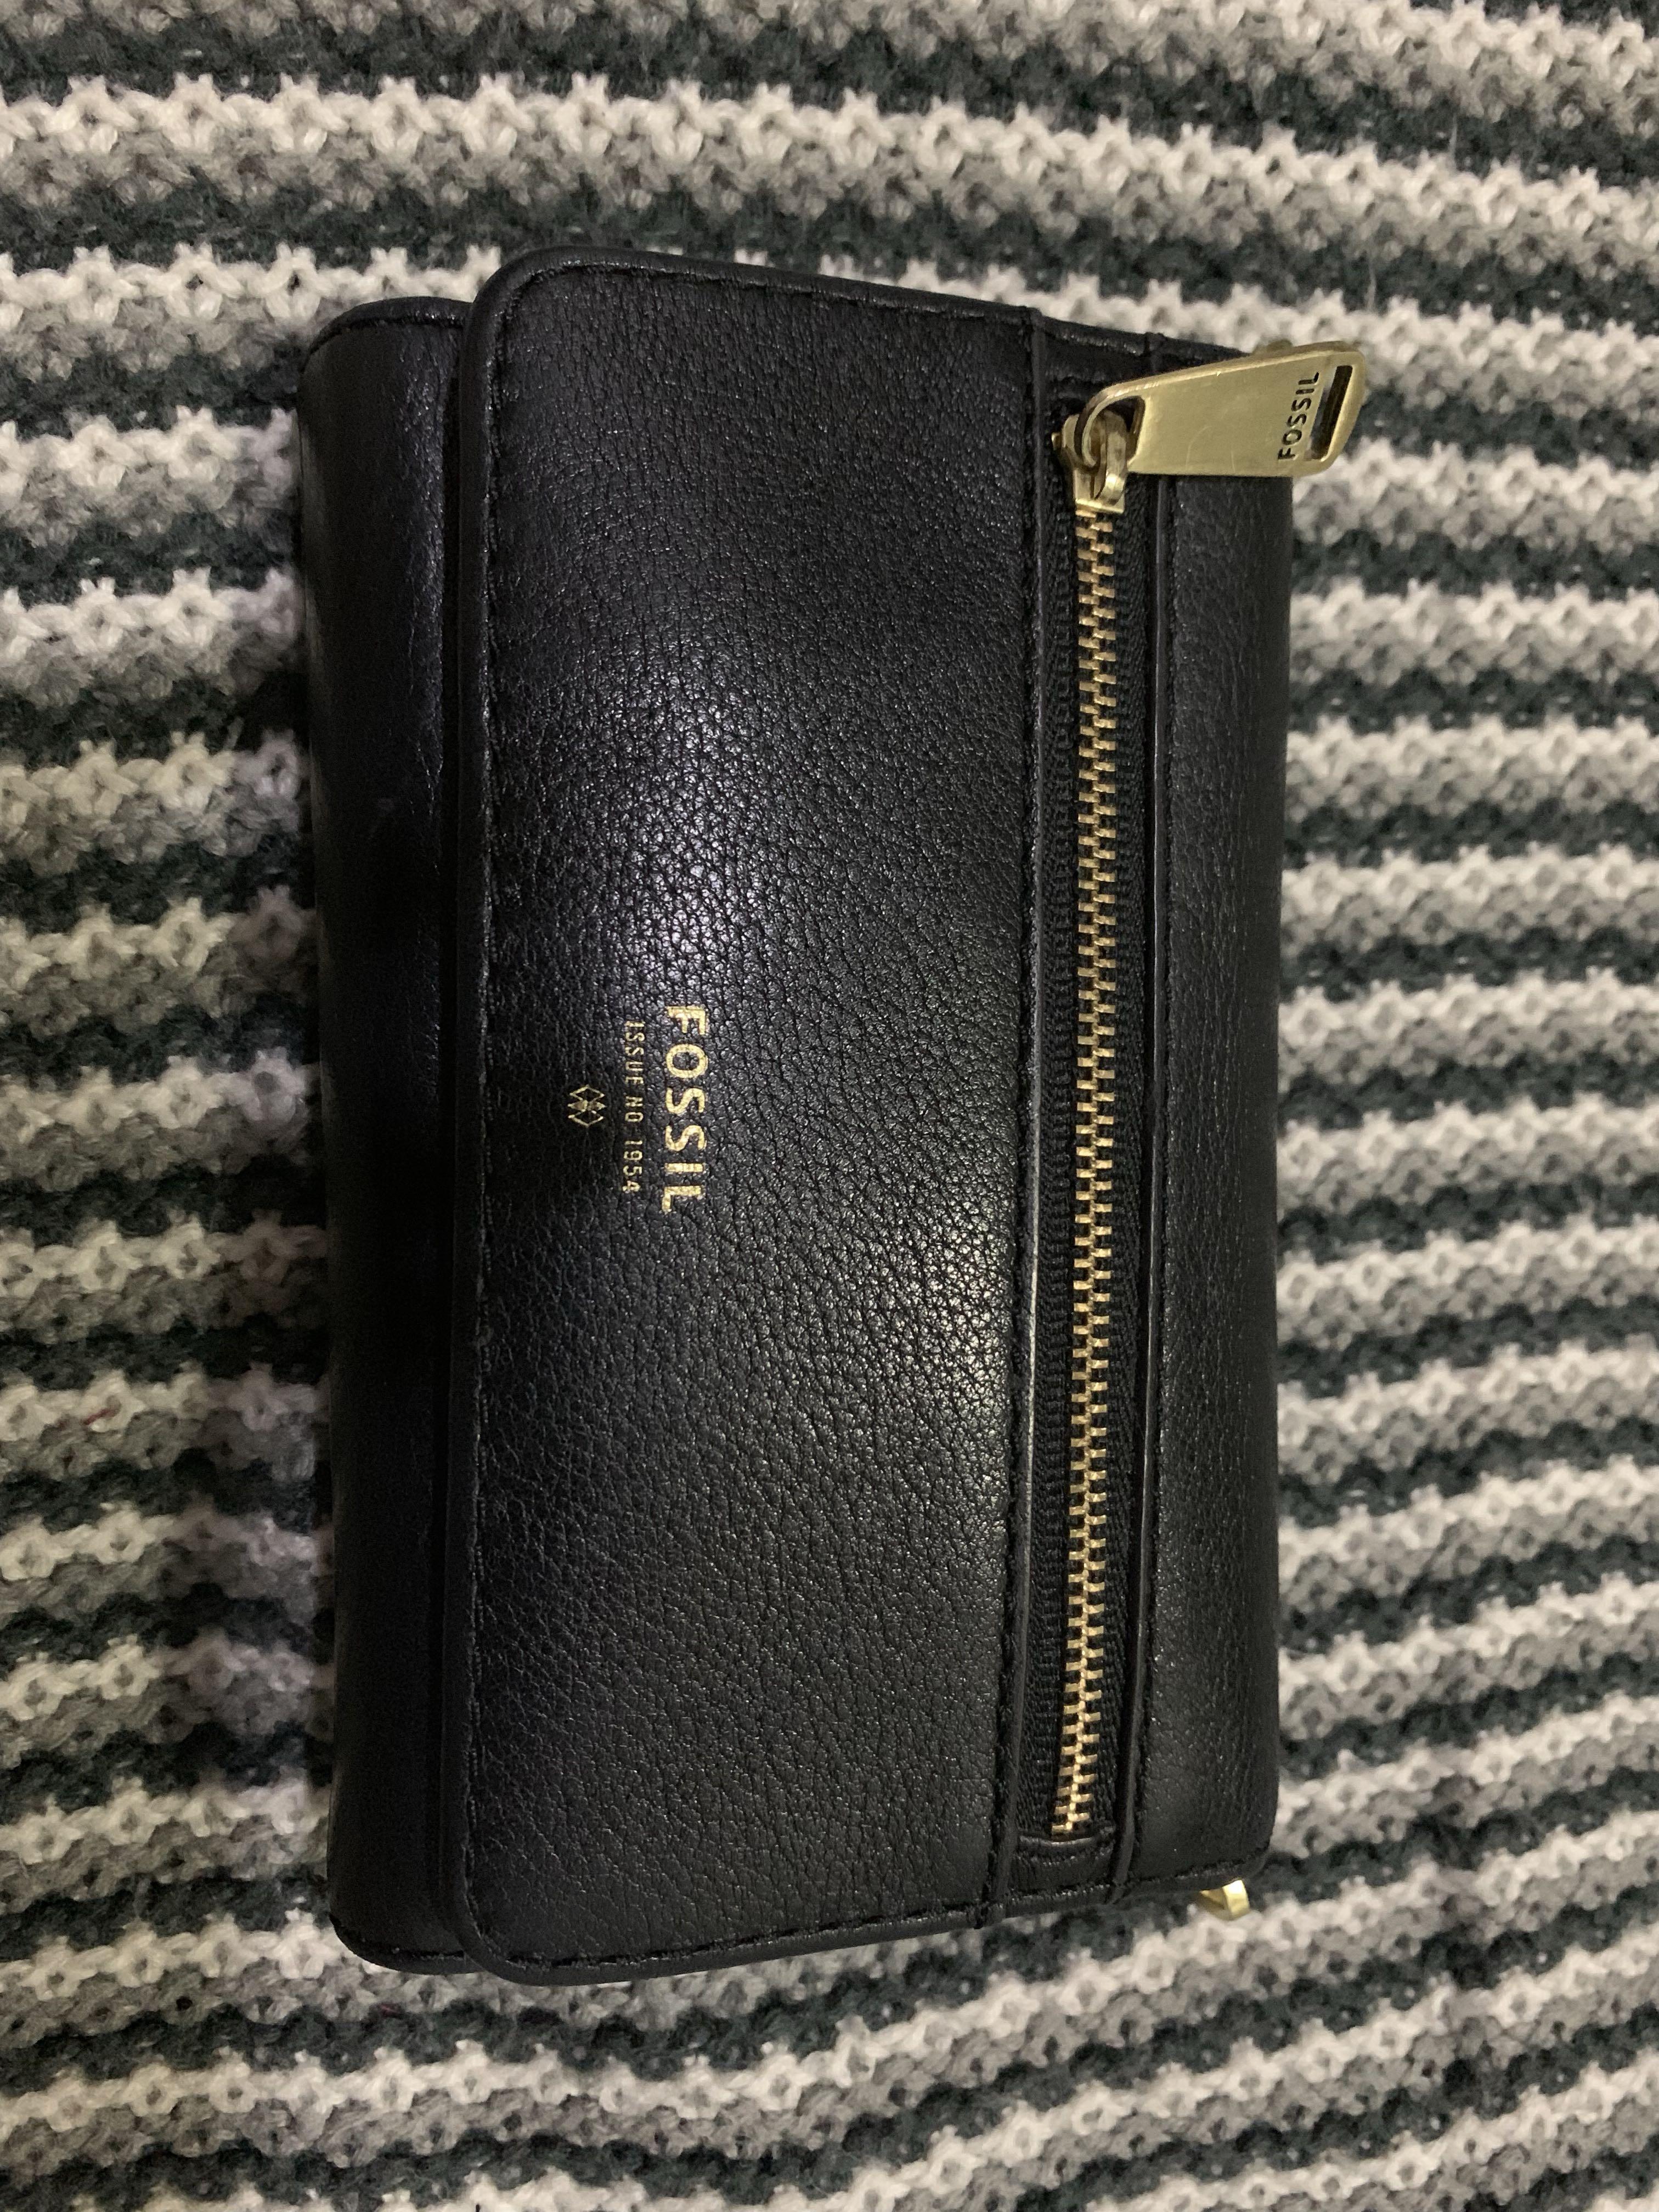 NEW Fossil Emma RFID Zip Clutch Women's Wallet Black Great Gift Idea